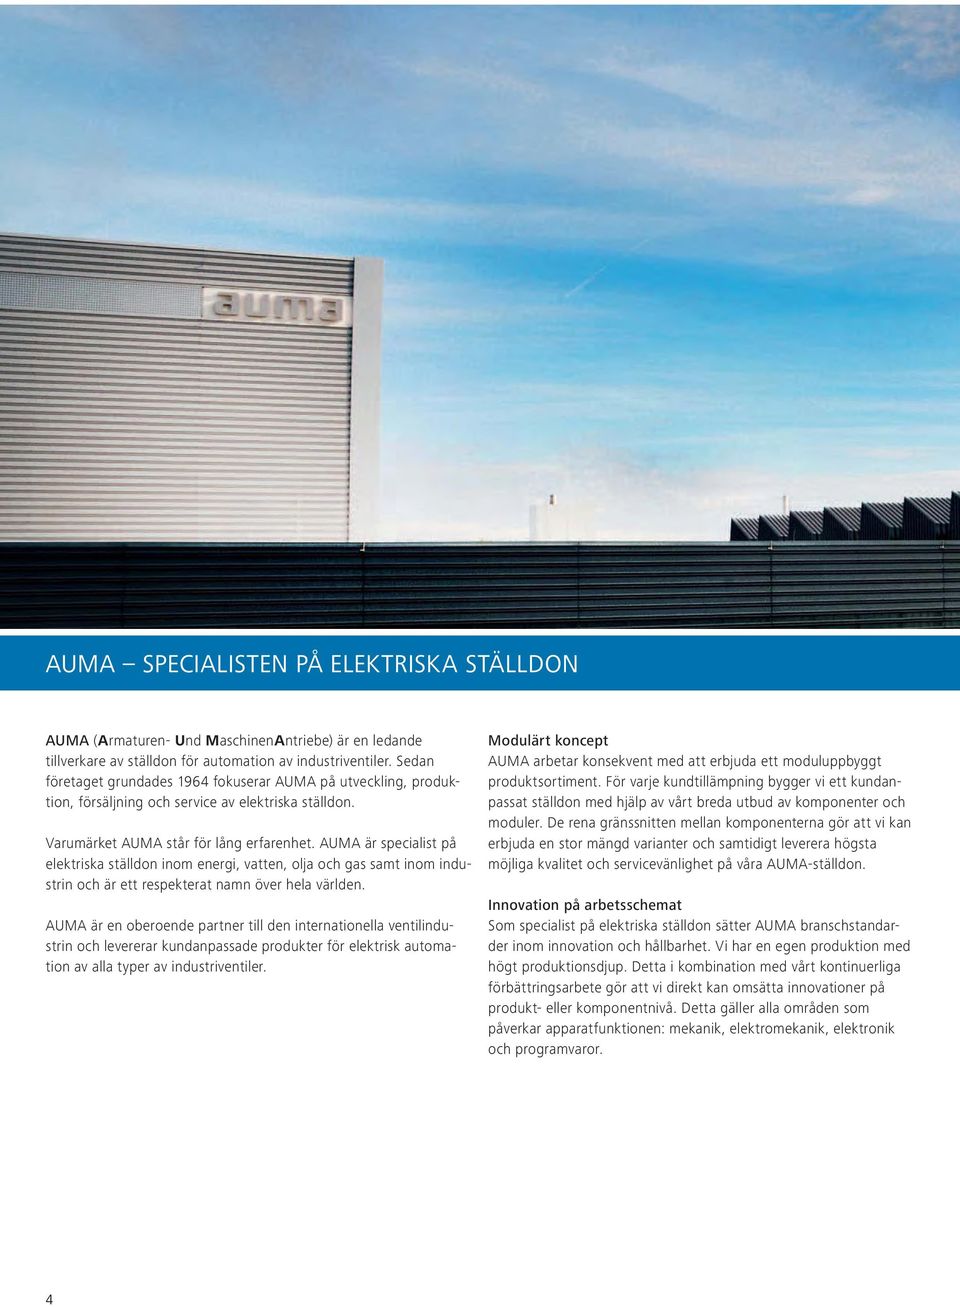 AUMA är specialist på elektriska ställdon inom energi, vatten, olja och gas samt inom industrin och är ett respekterat namn över hela världen.